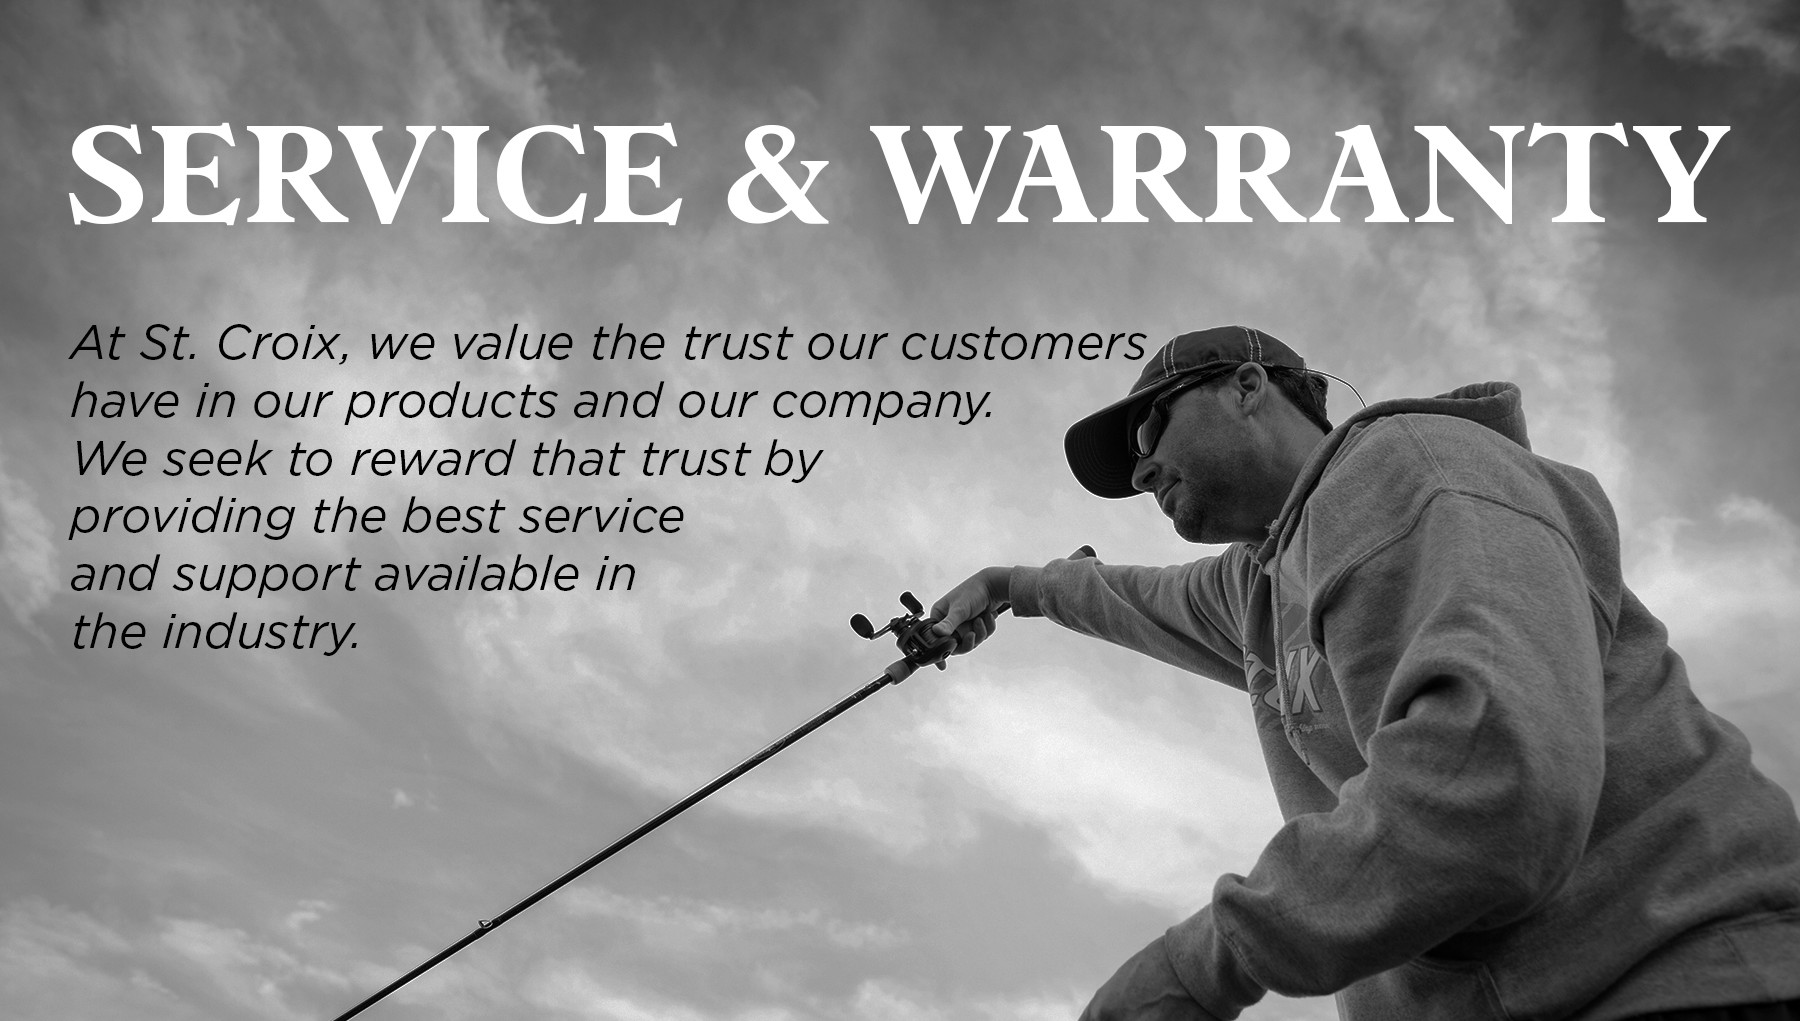 Service & Warranty